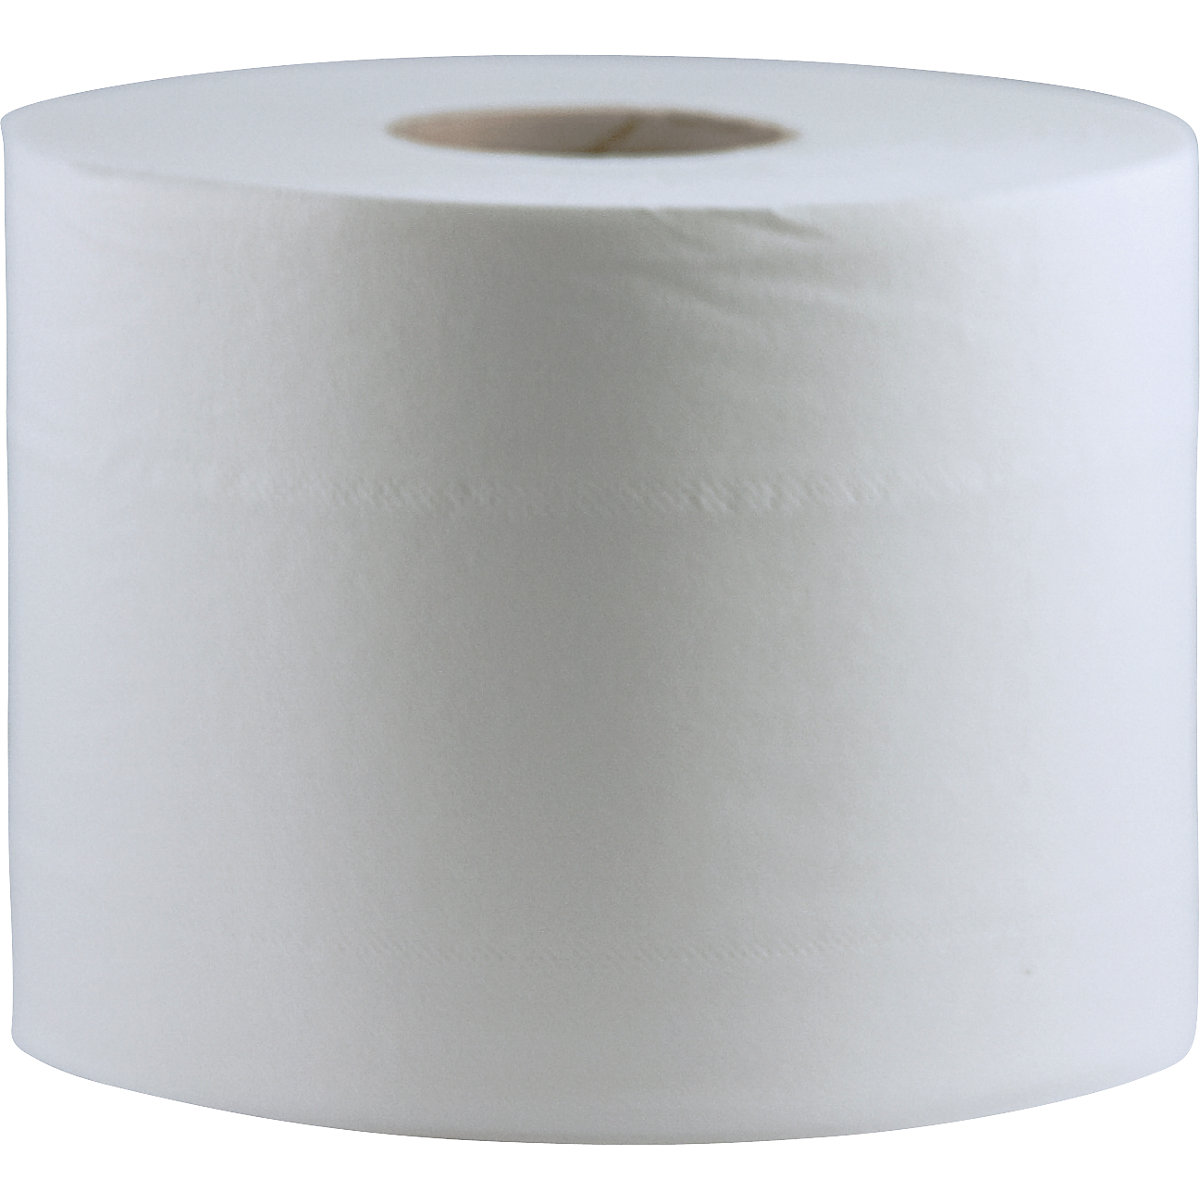 Toaletni papir - CWS